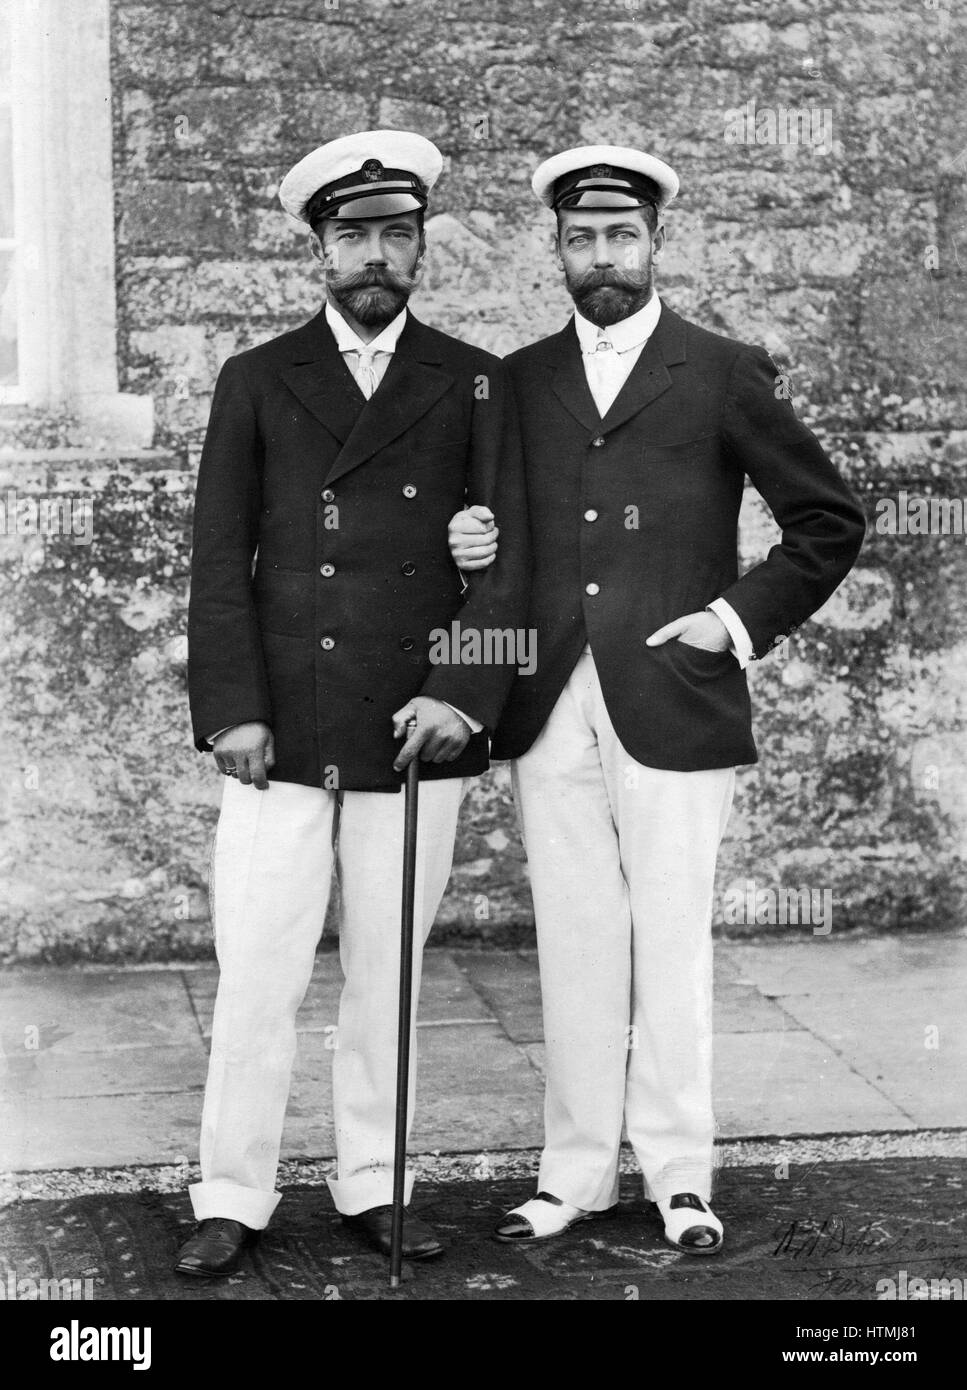 Nicholas II (1868-1918) l'imperatore di Russia dal 1894 (sinistra) con suo cugino George V (1865-1936), re di Gran Bretagna dal 1910. Entrambi gli uomini erano nipoti di Queen Victoria (1819-1901). Fotografia. 1915 Foto Stock